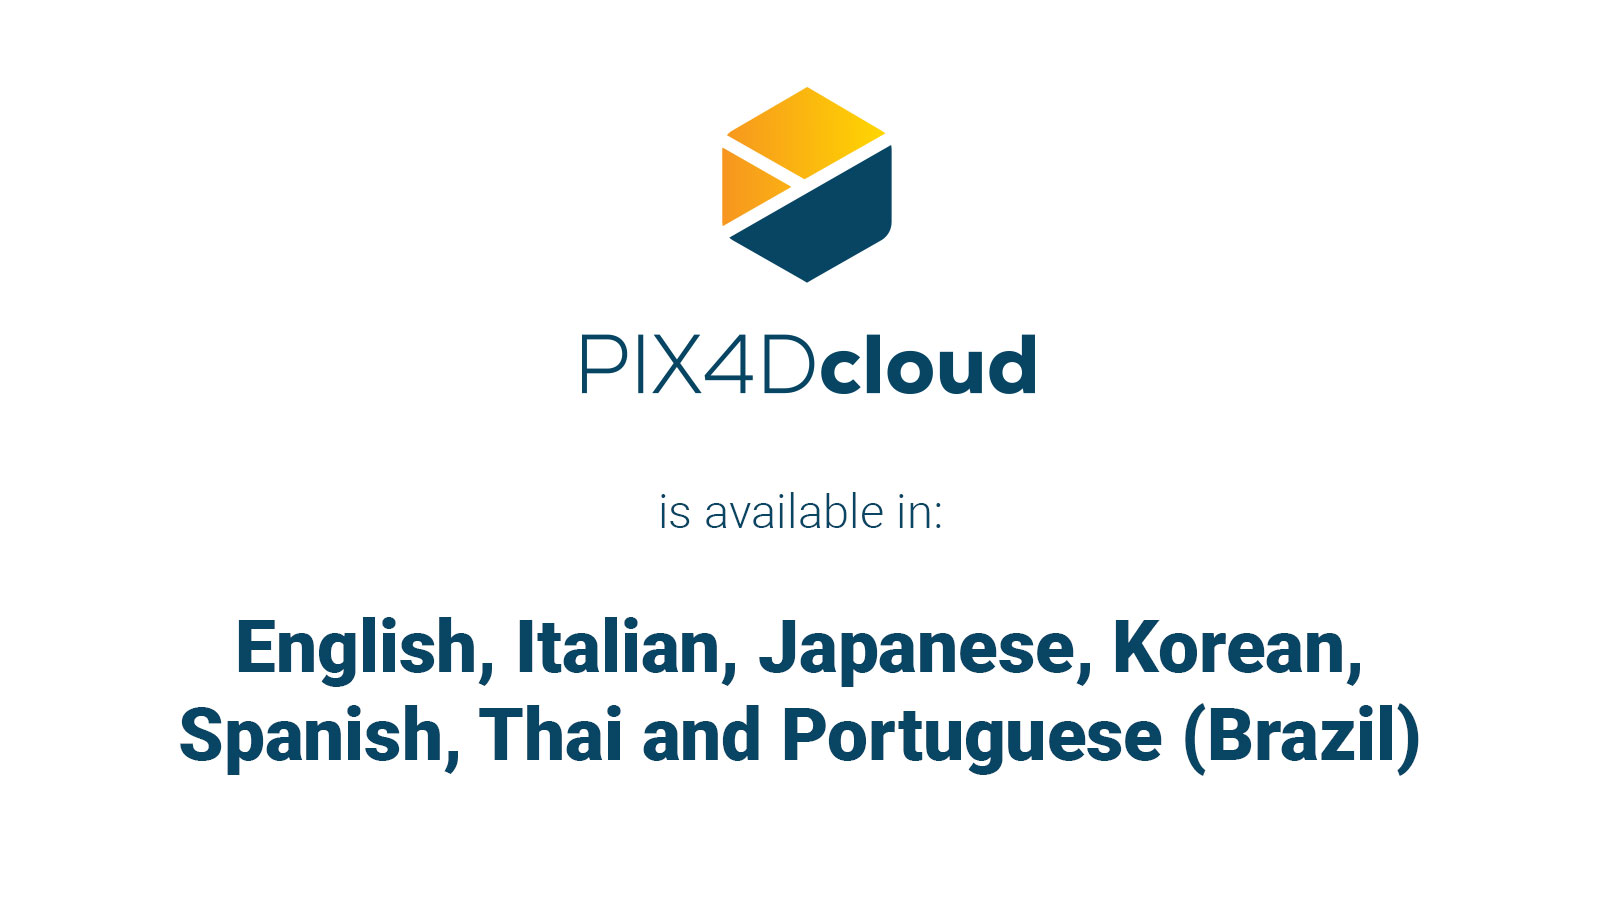 PIX4Dcloud es multilingüe